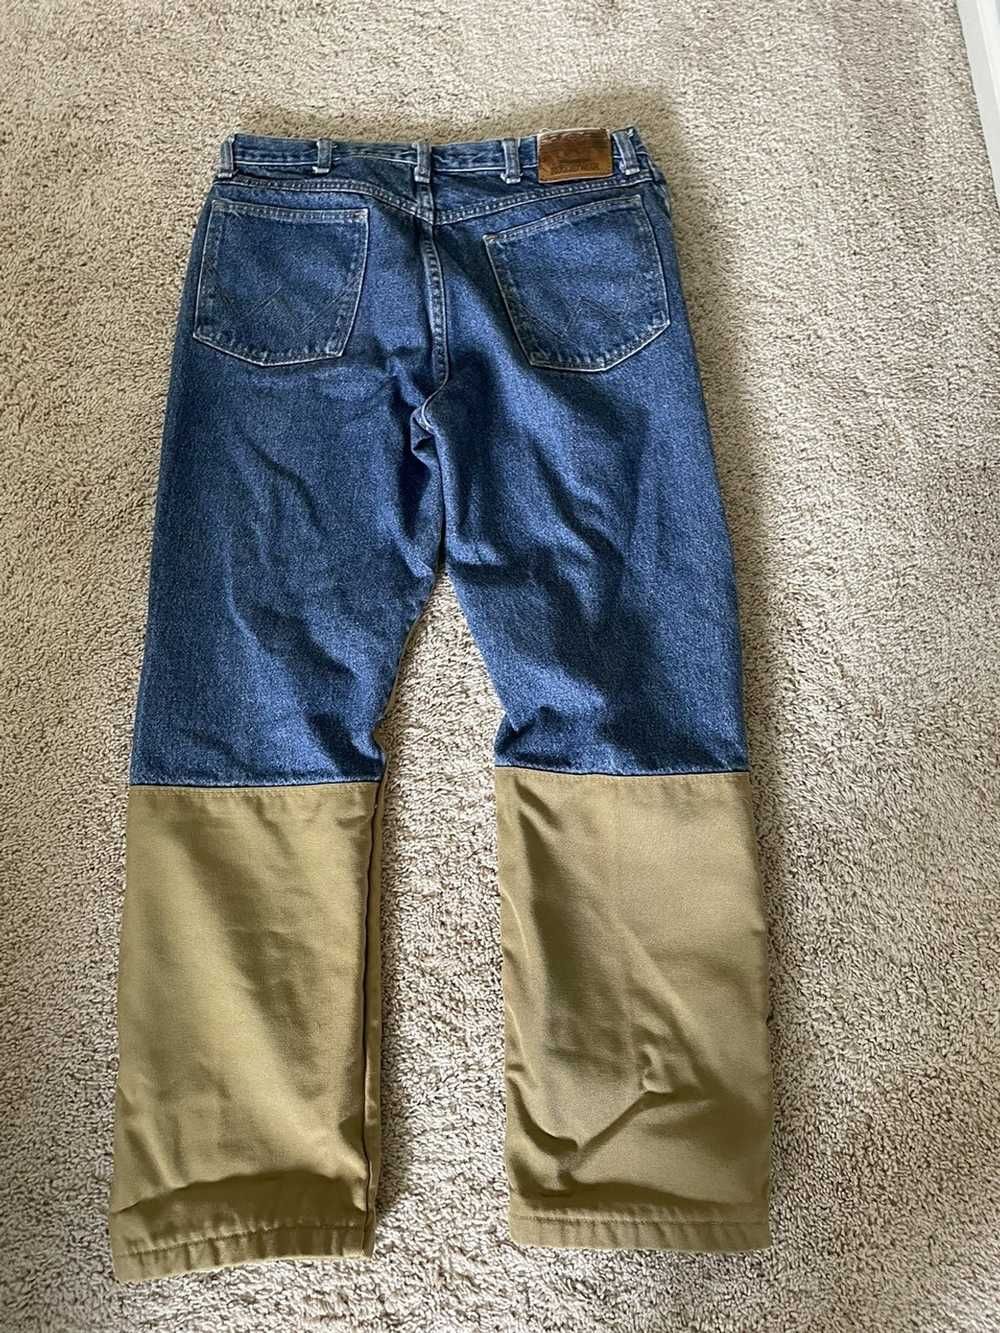 Wrangler Wrangler Rugged Wear Jeans - image 2